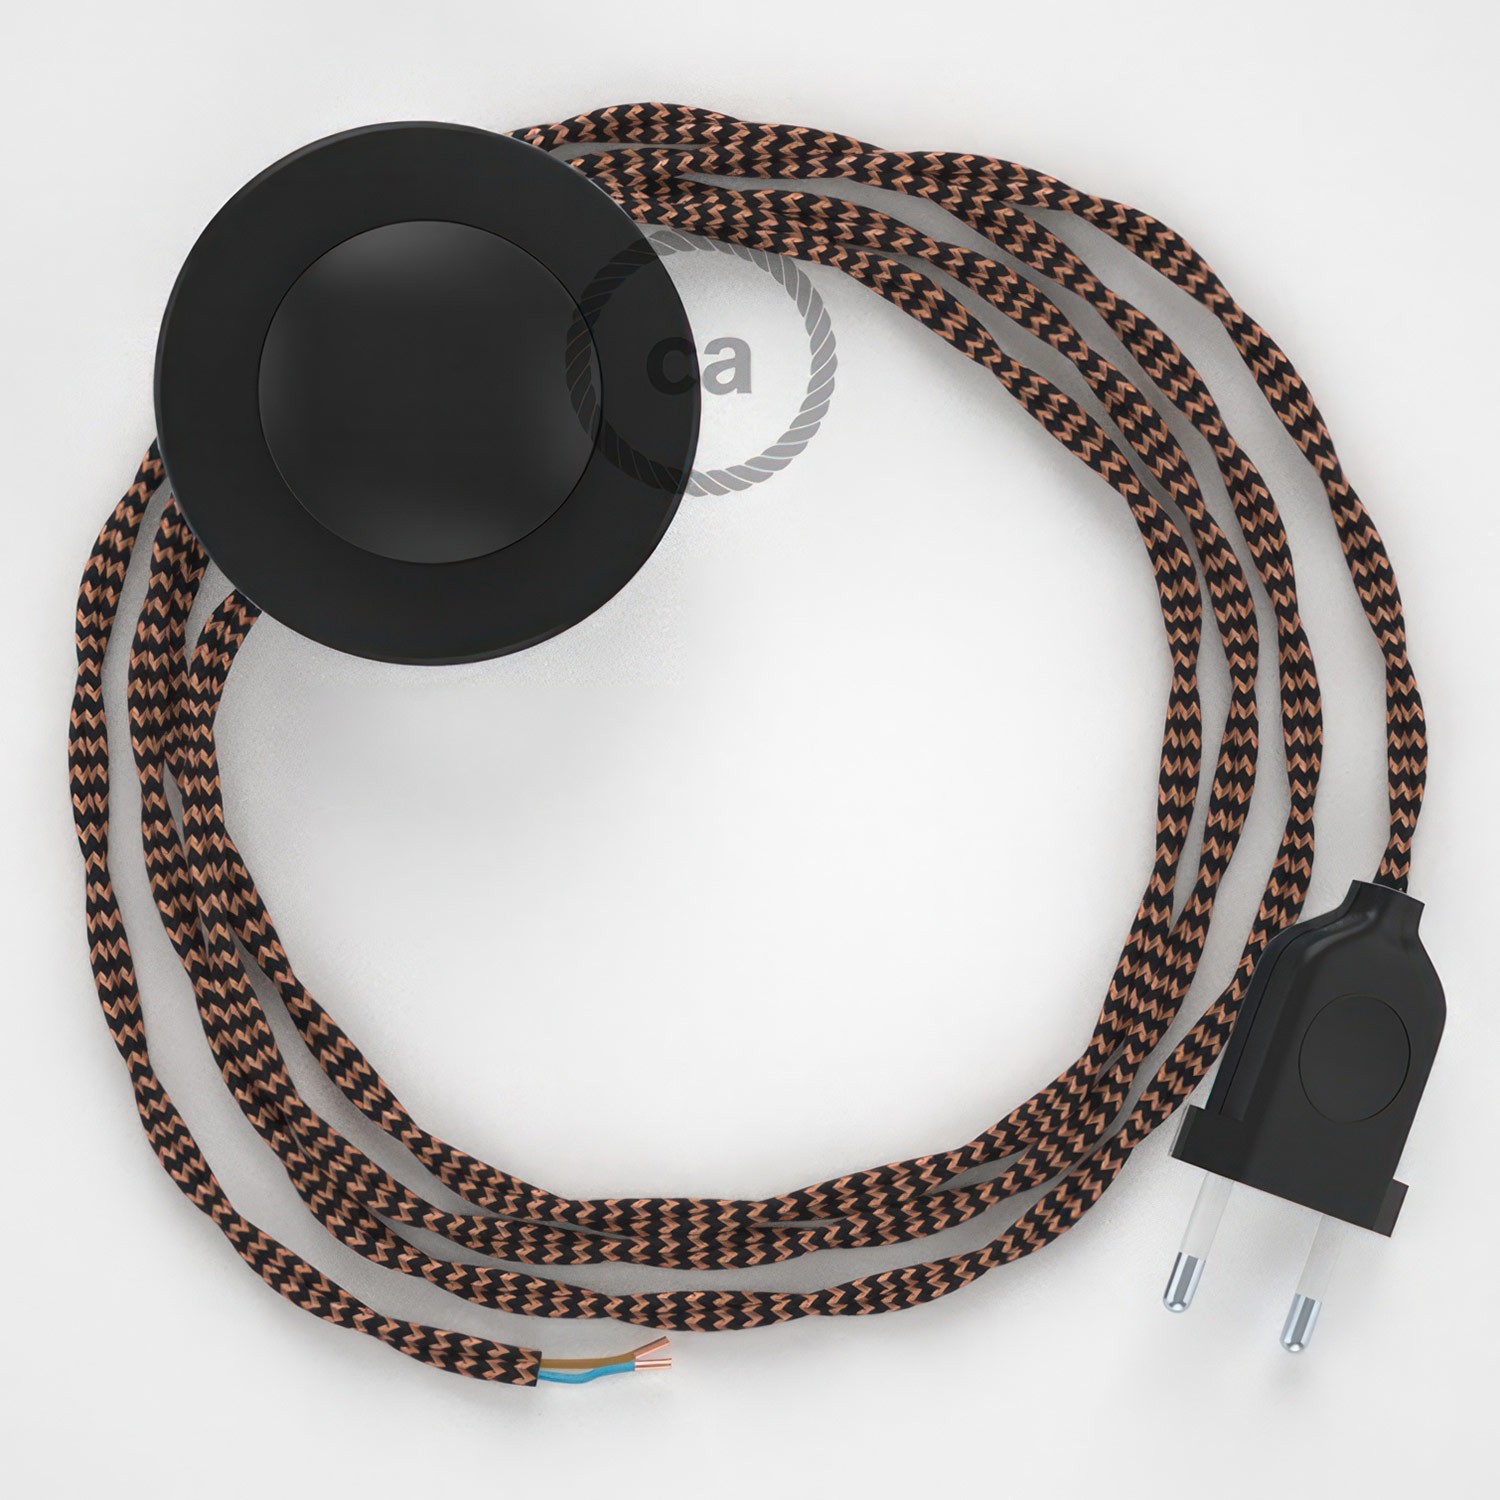 Cableado para lámpara de pie, cable TZ22 Efecto Seda Negro y Whisky 3 m. Elige tu el color de la clavija y del interruptor!